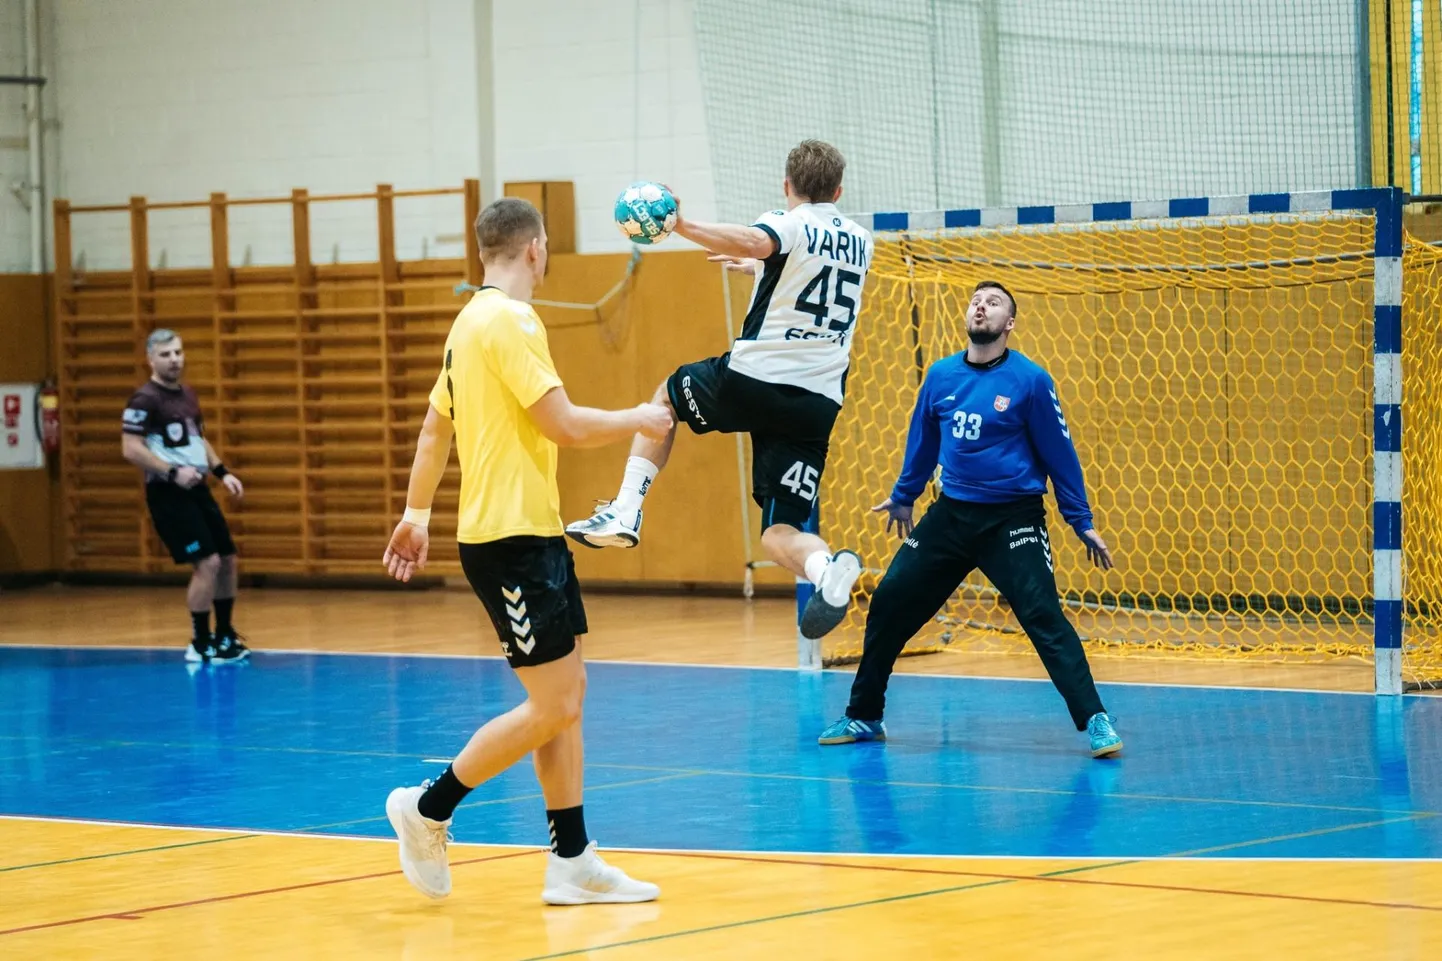 Eesti meeste käsipallikoondis pidas aastavahetuse eel Lätis Ludzas kolmemängulise Balti mere turniiri, kus tuli Leeduga viiki mängides Leedu järel teiseks.